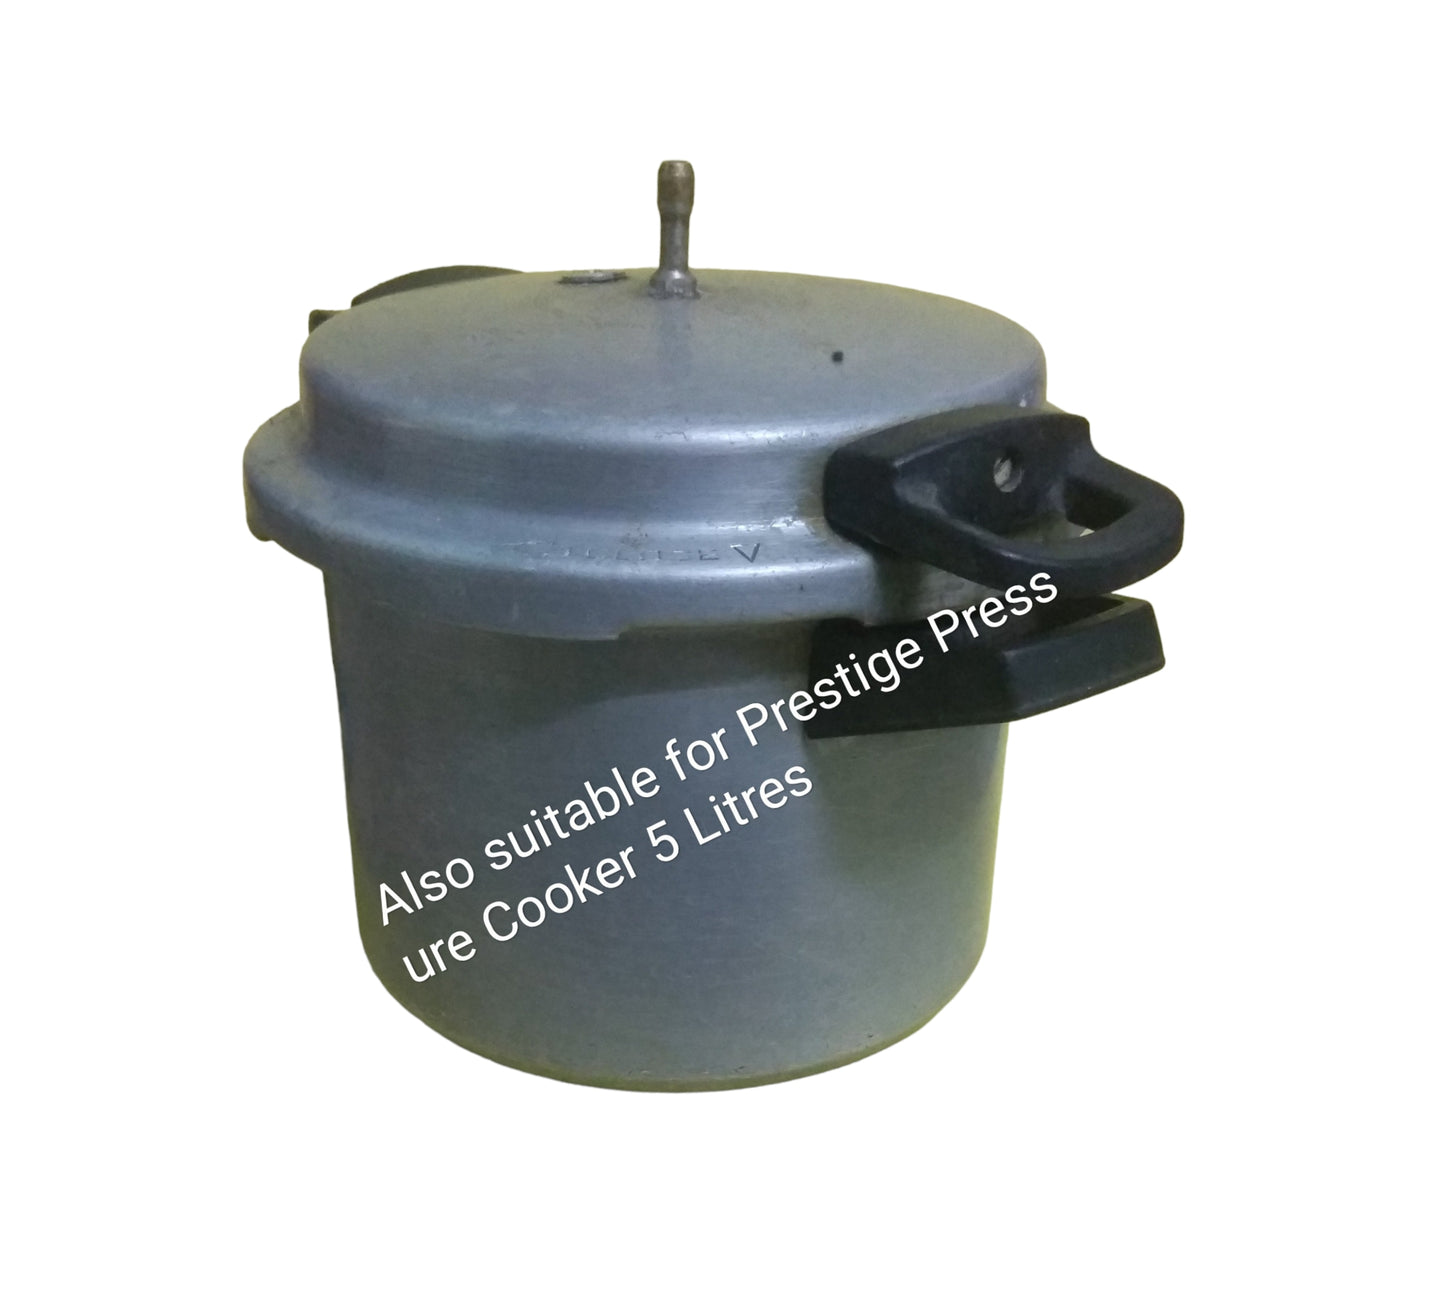 Cooker gasket suitable for Popular 5 Litre Pressure Cooker